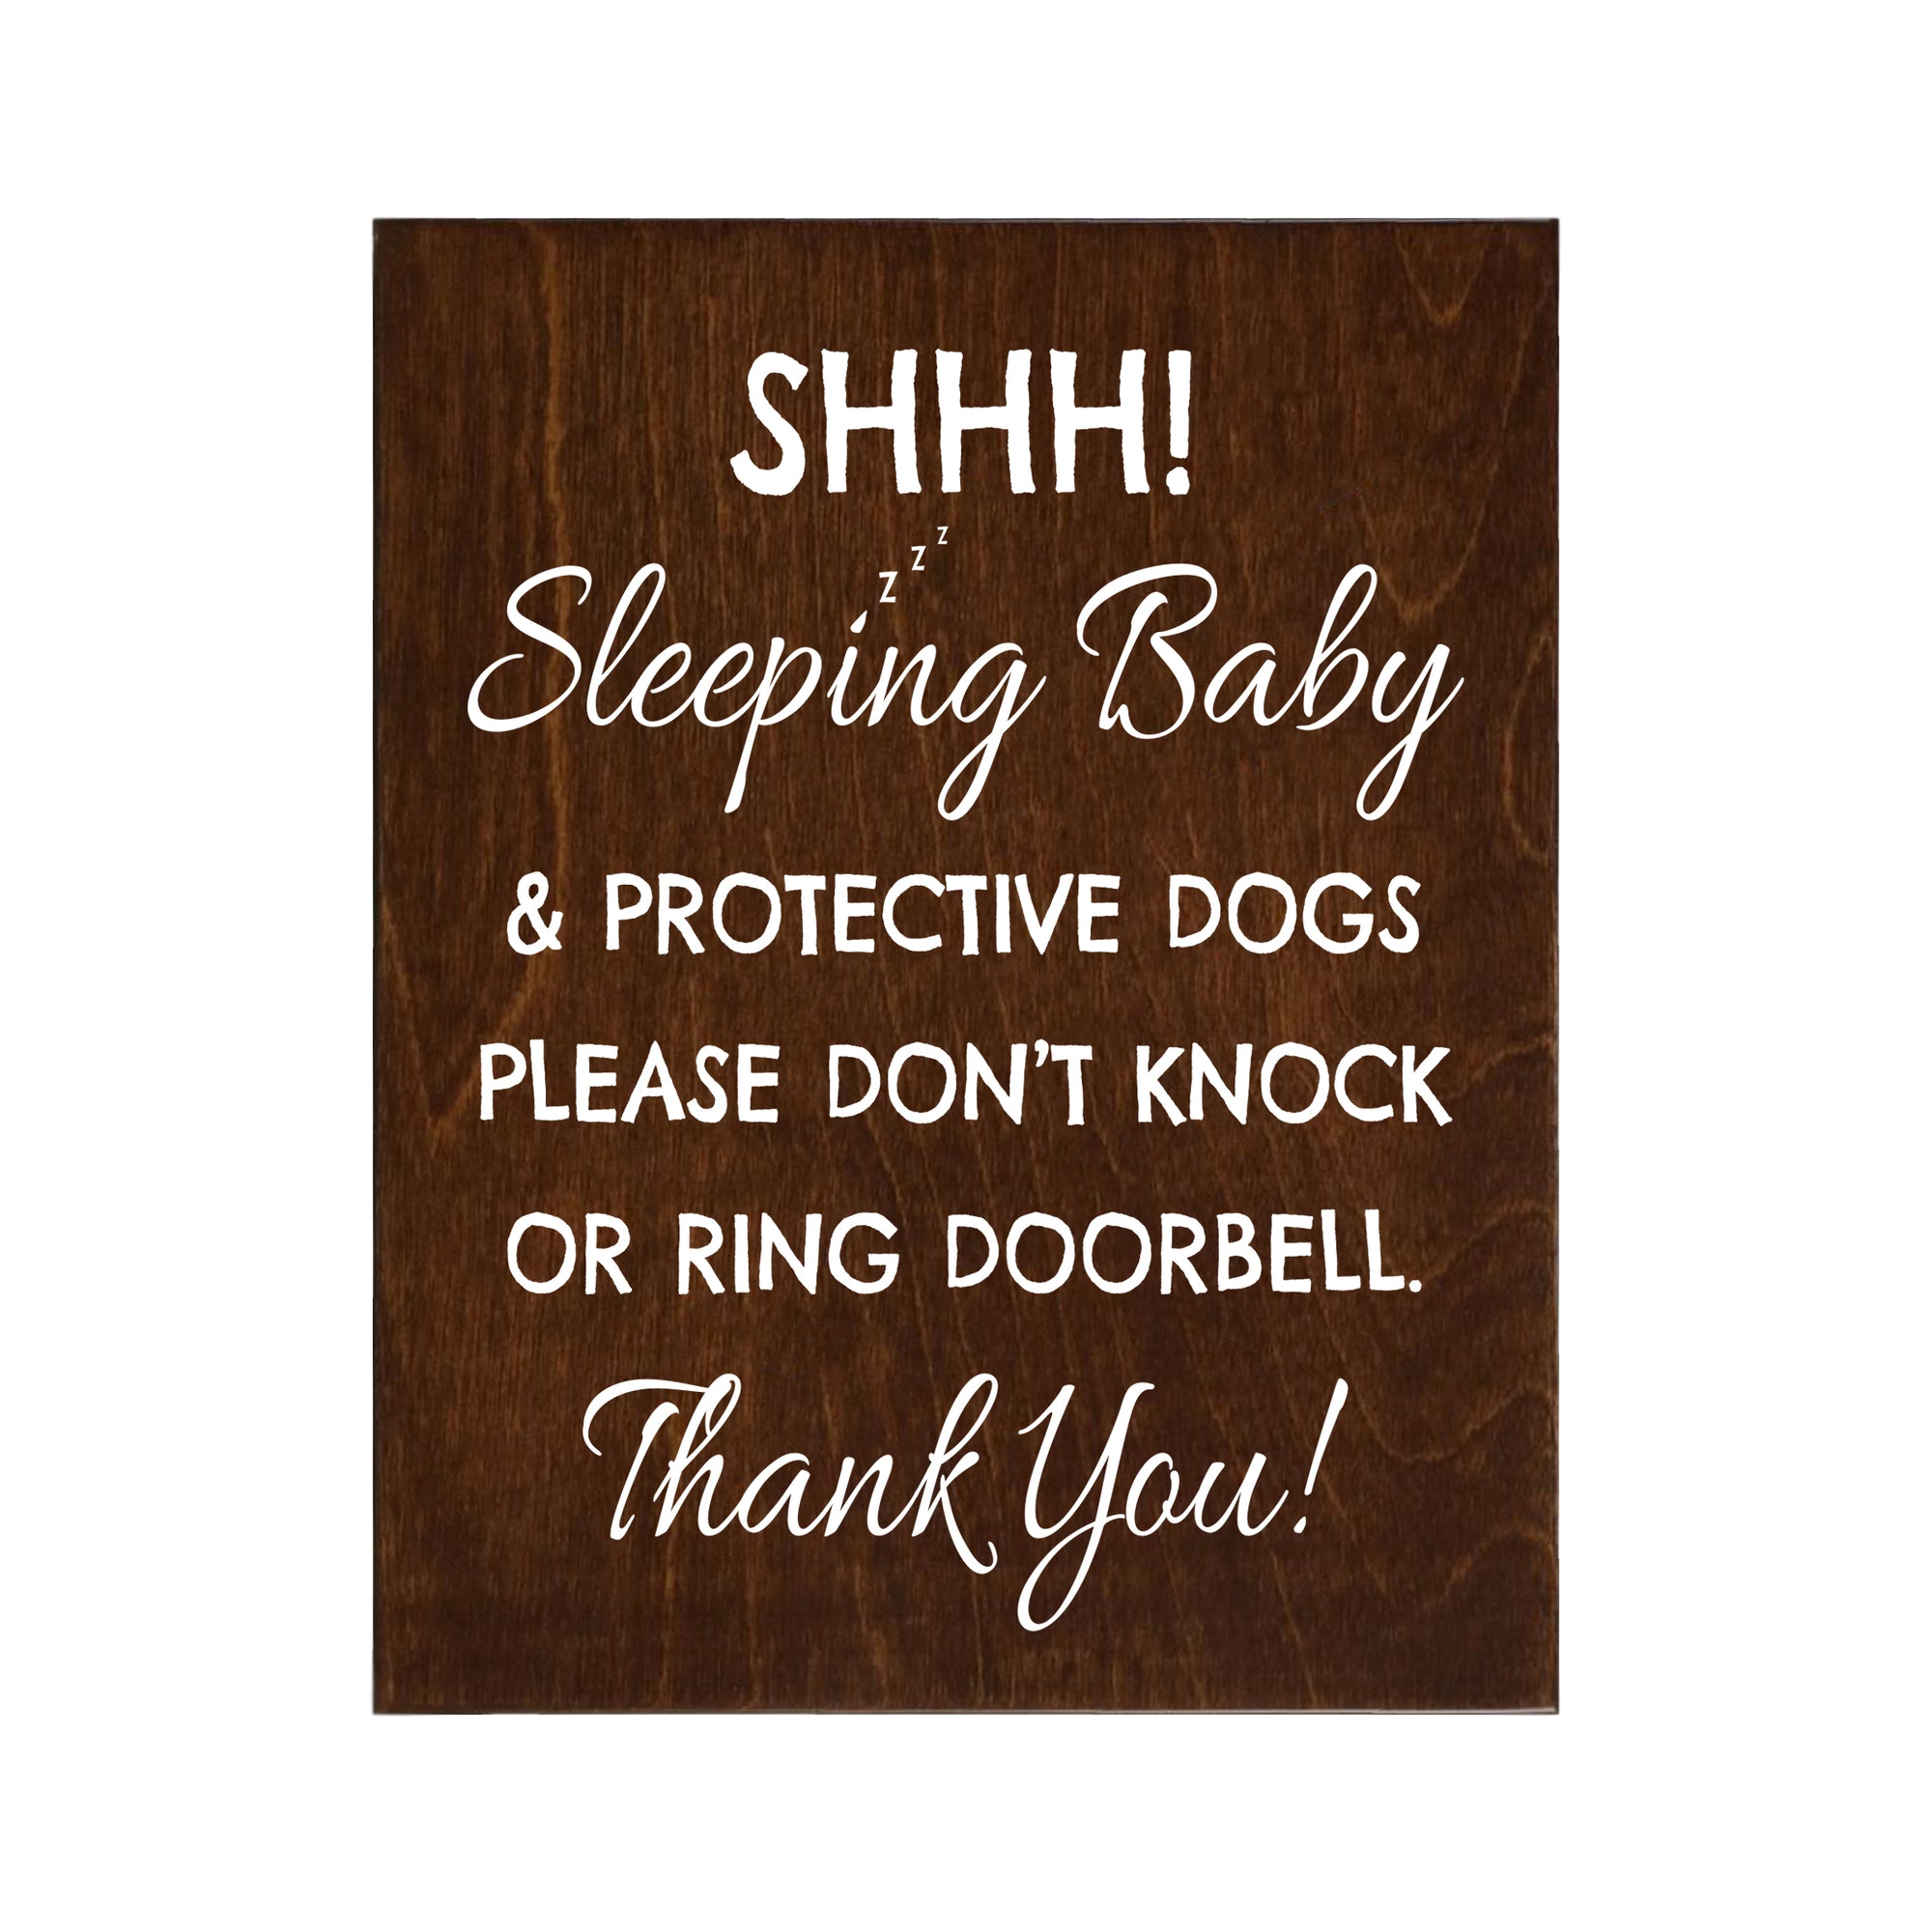 Sleeping Baby Sign for Front Door - Sleeping Baby